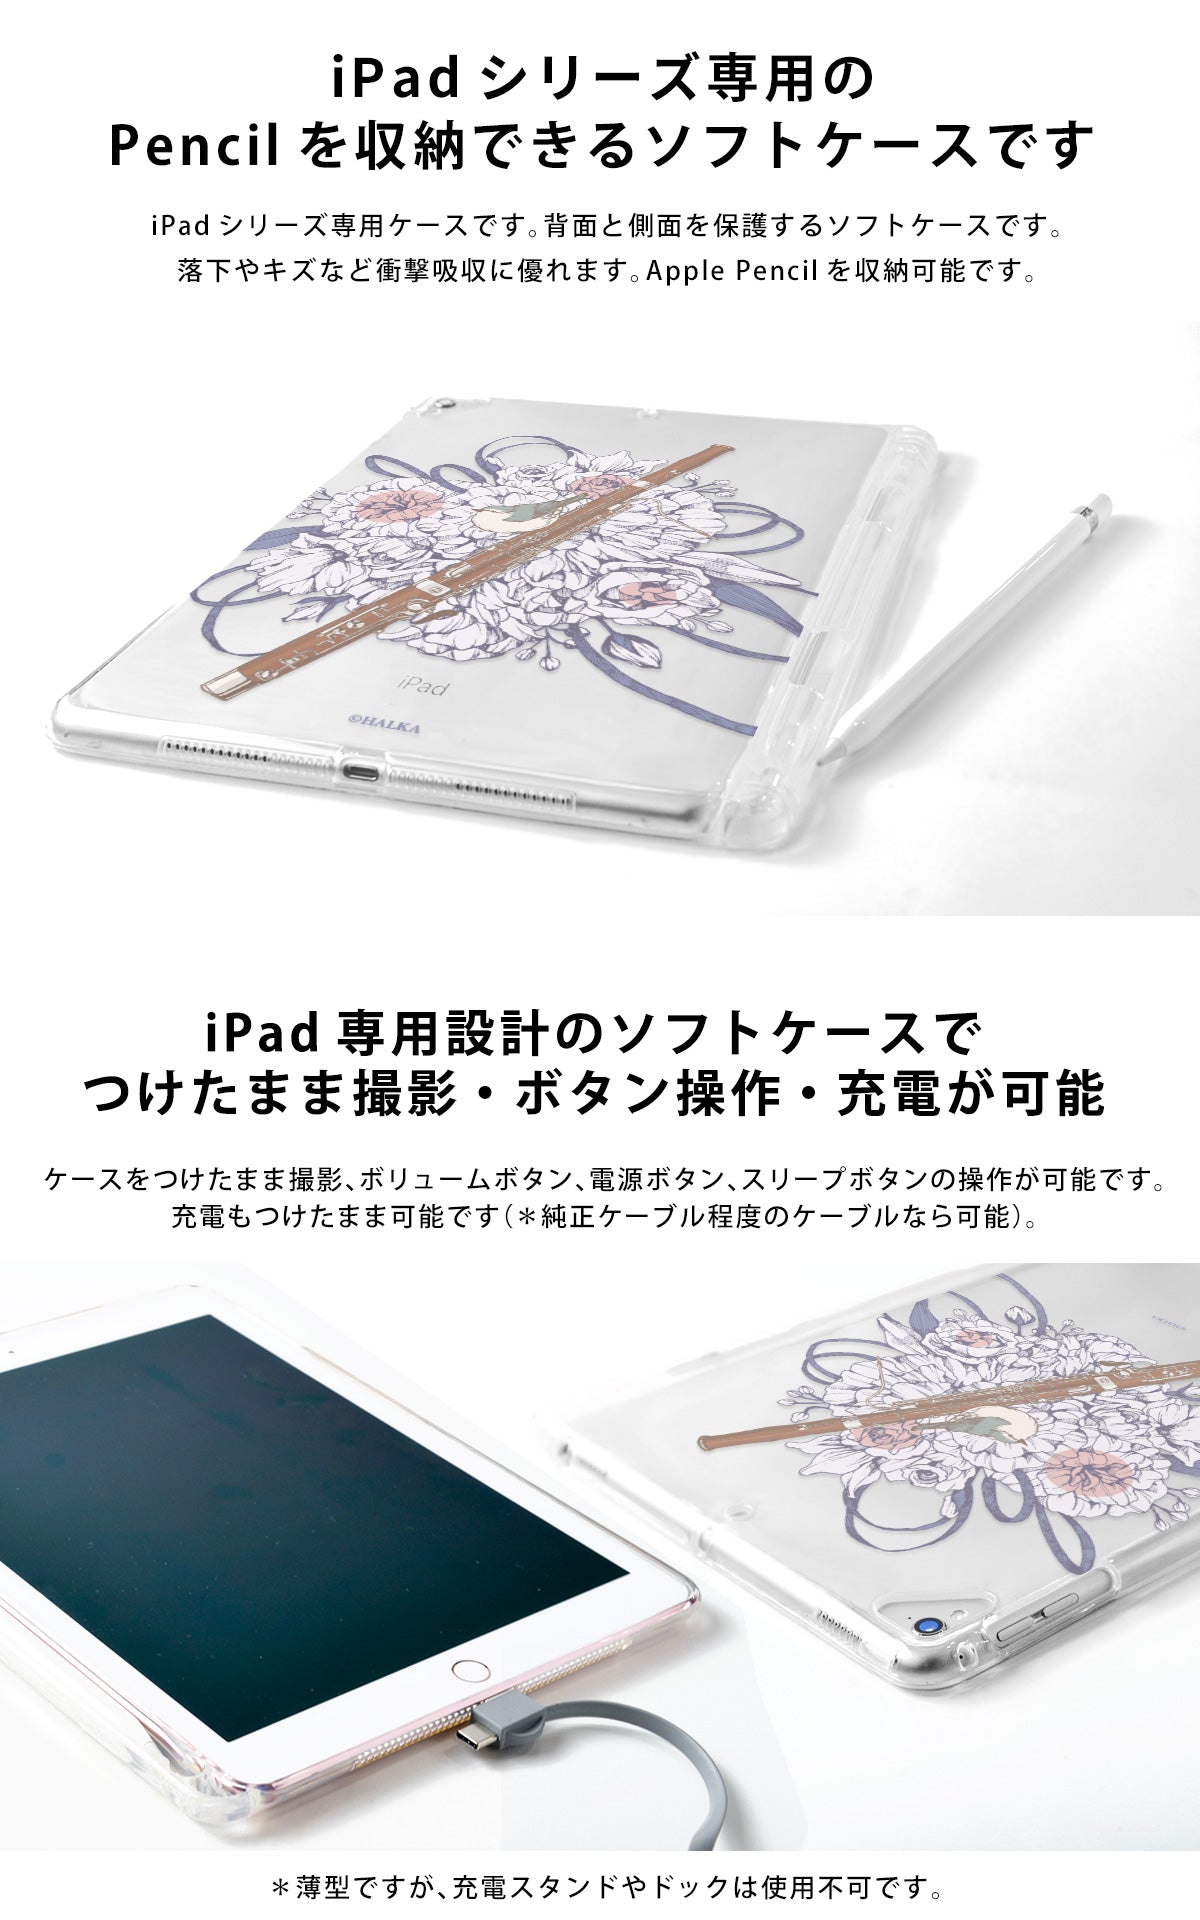 特定購入者専用【Apple】iPadair2（セルラーモデル）＆専用保護ケース